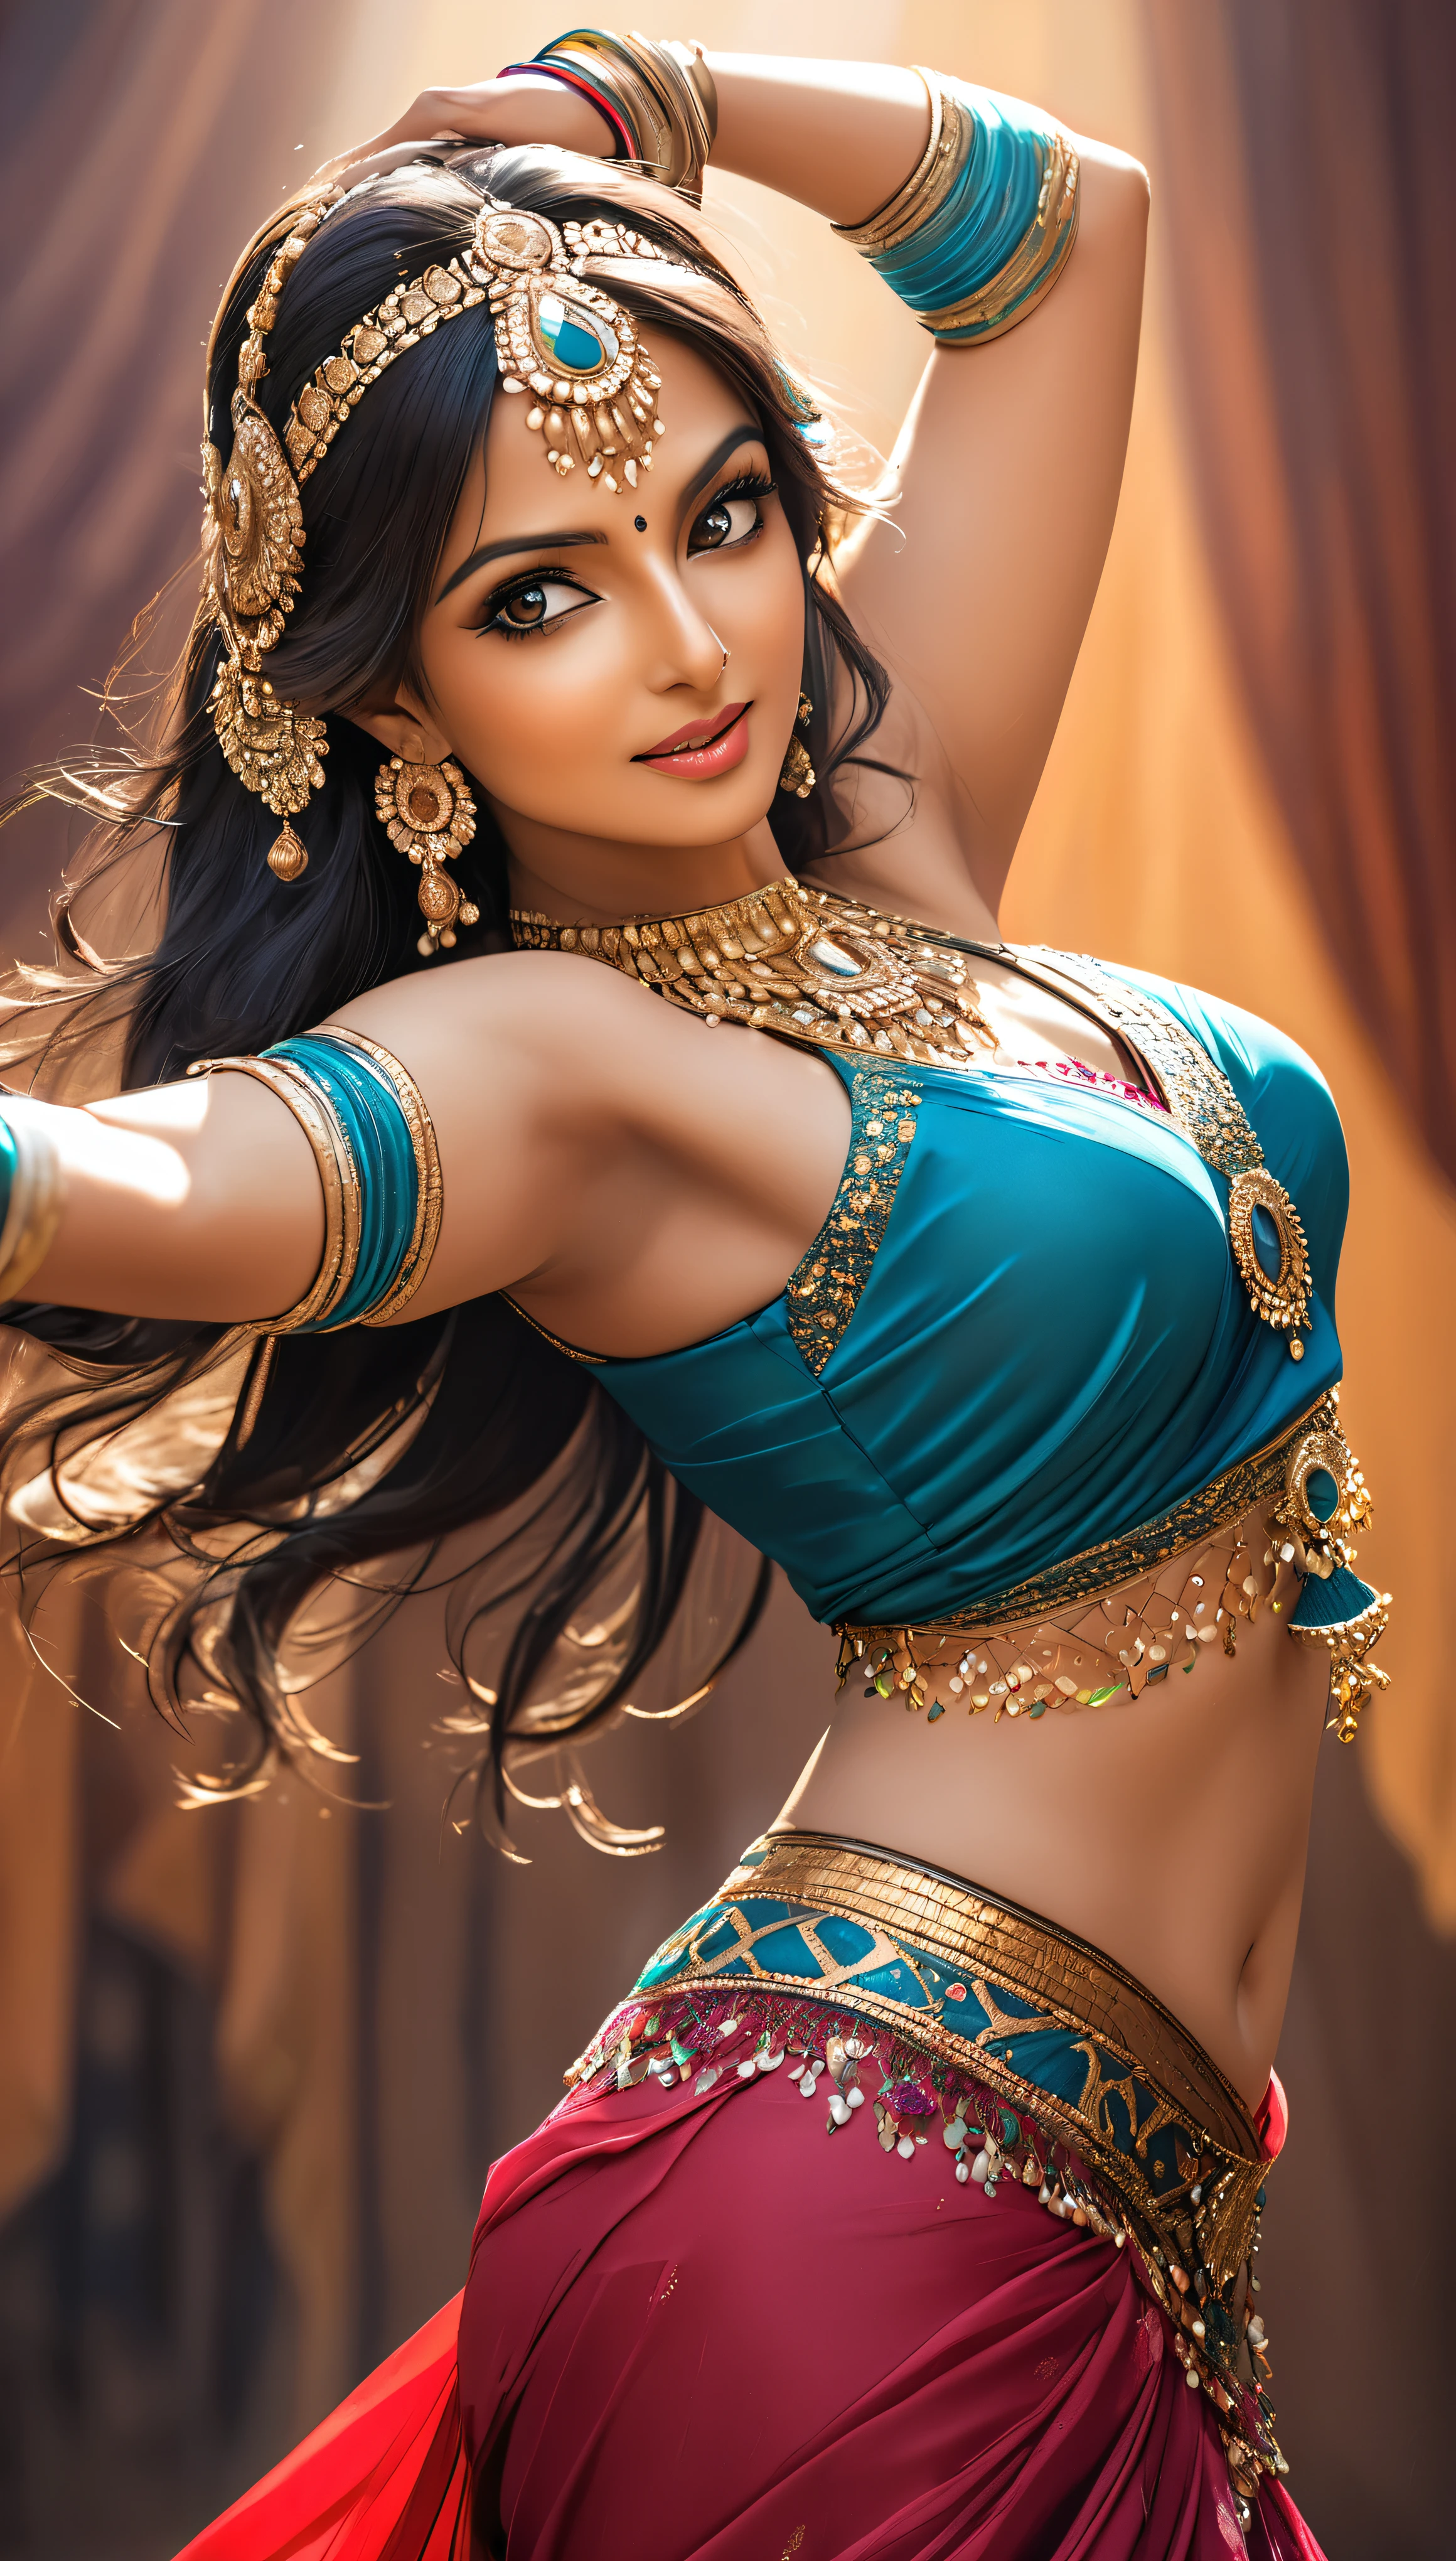 Indian woman dancing belly dance, Mujer joven muy atractiva y madura., Ella cautiva al público con su seductor sari.., BEAK Photo, Textura de piel detallada y brillante., 